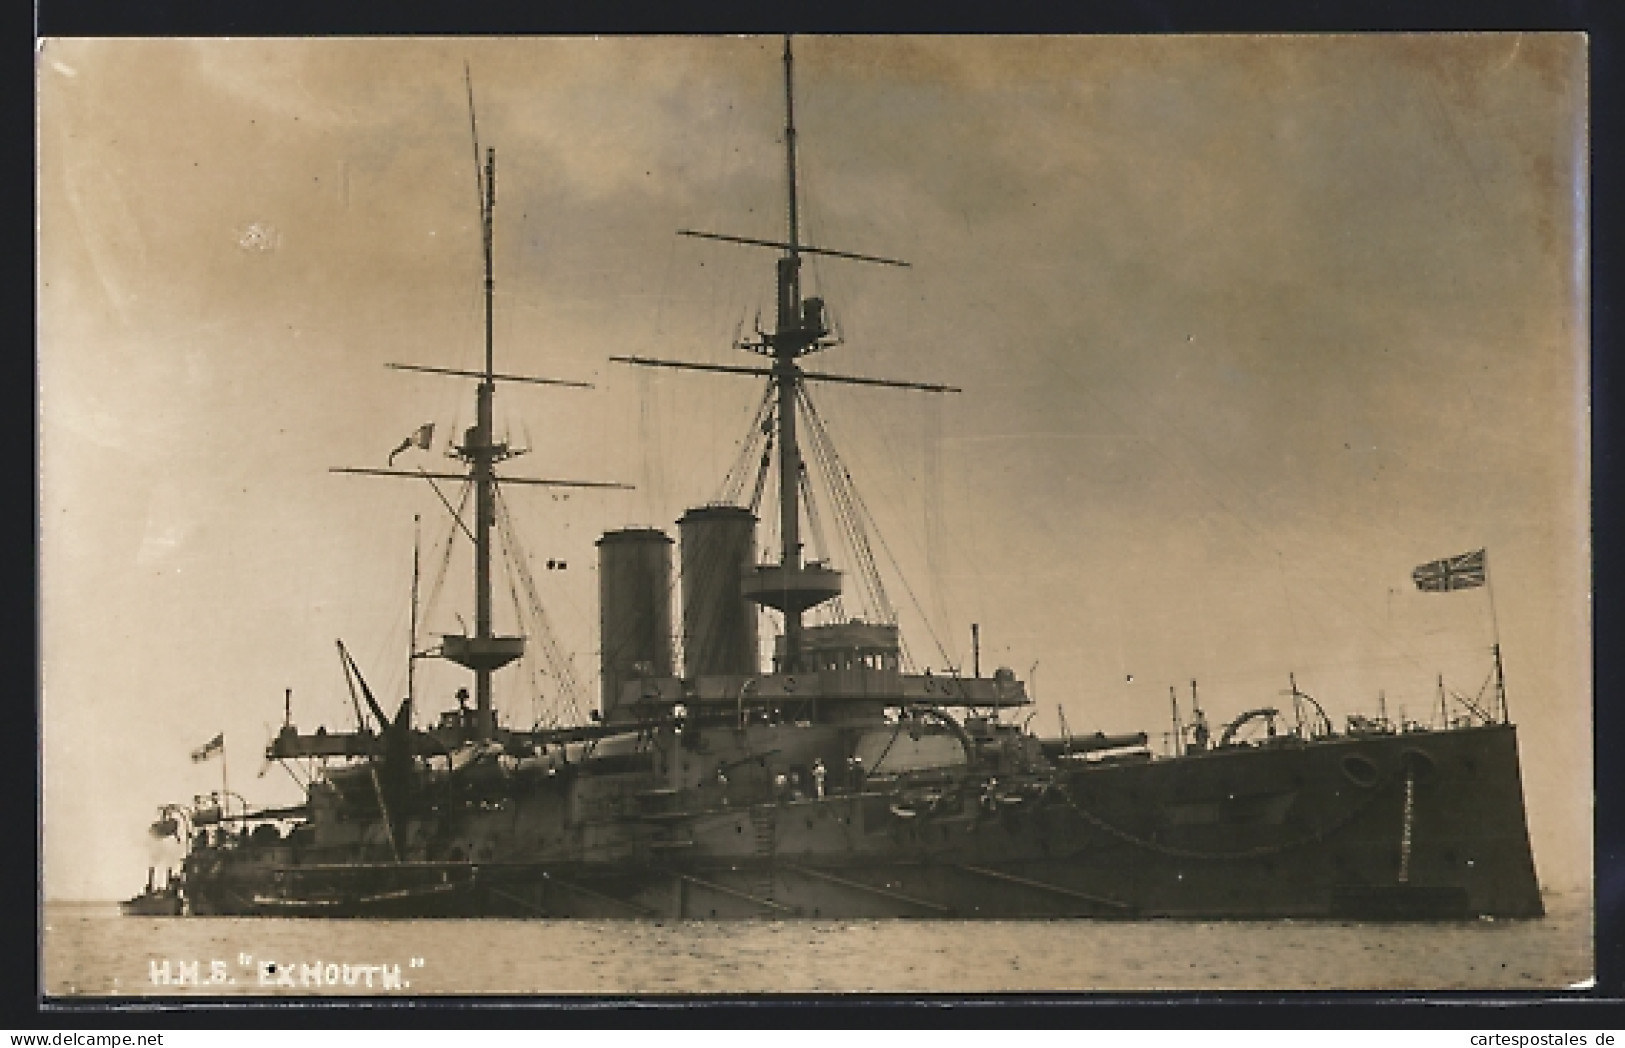 Pc HMS Exmouth Im Wasser  - Warships